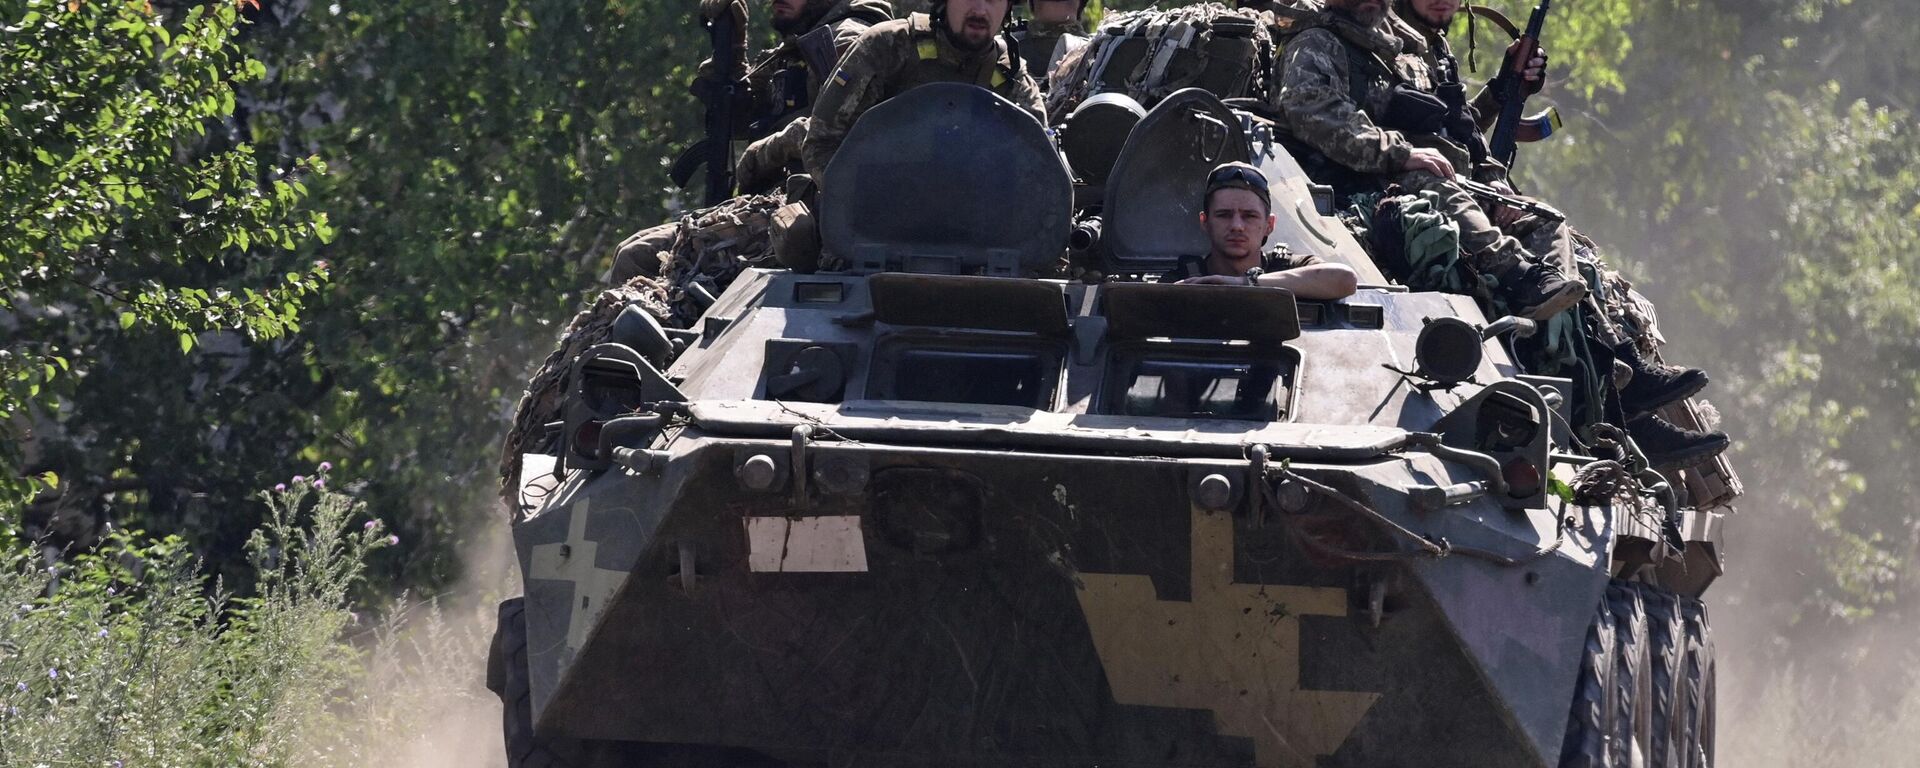 Soldados ucranianos se deslocam por estrada usando veículo de combate blindado, no interior da região de Donetsk, em 8 de julho de 2022 - Sputnik Brasil, 1920, 08.07.2022